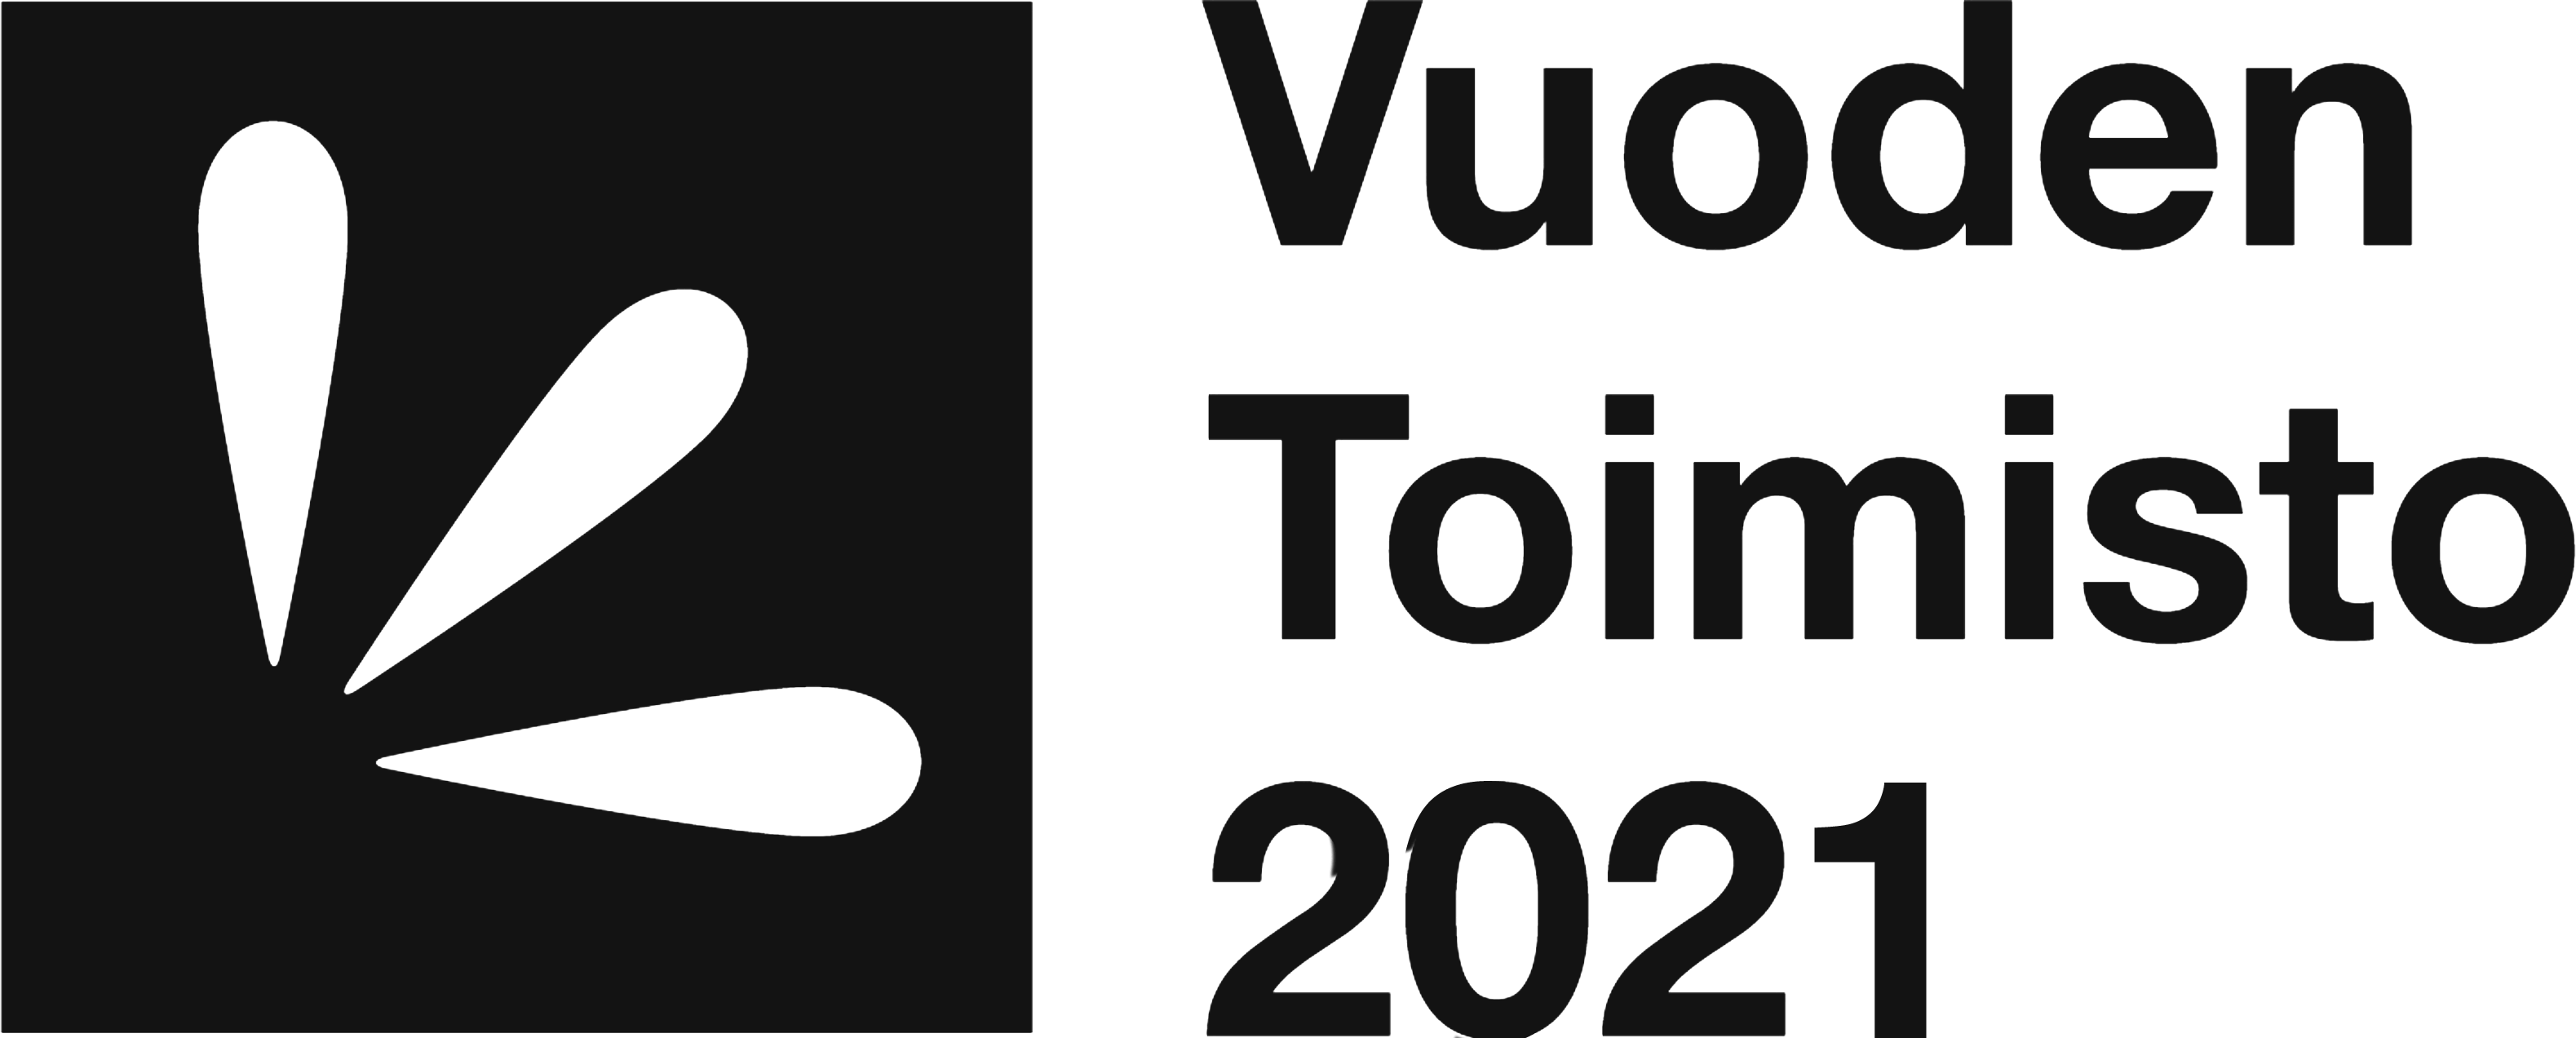 Vuoden toimisto 2021 -logo